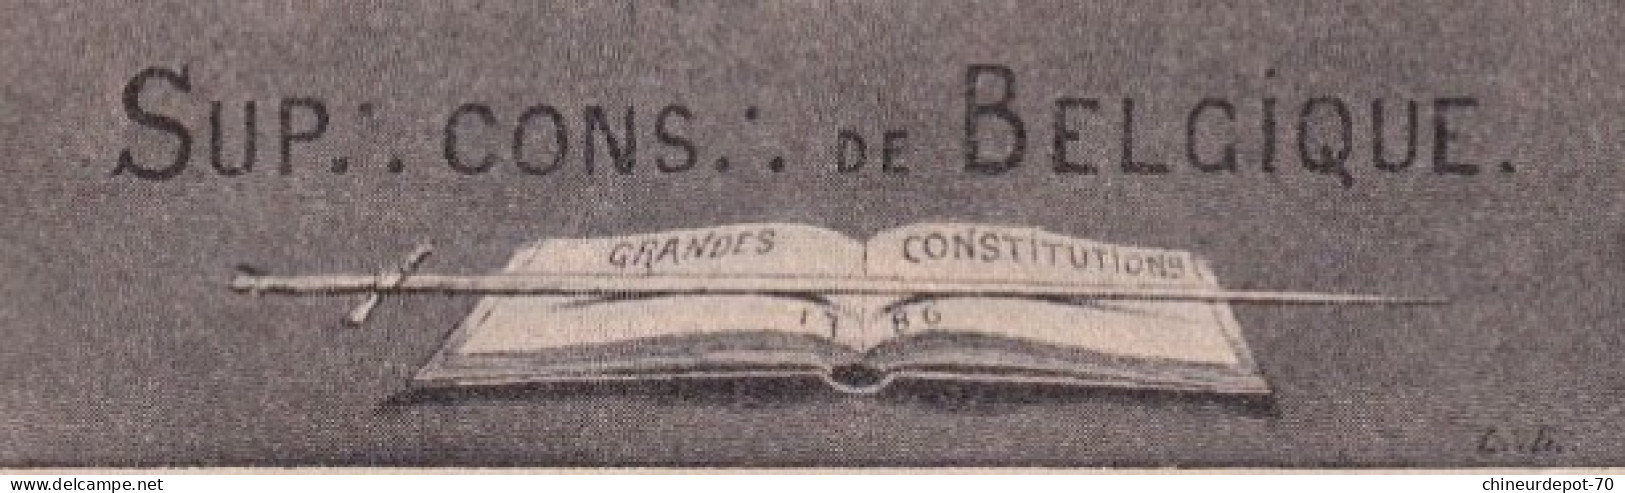 CONFERENCE INTERNATIONALE D DE 1907 SUP CONS DE BELGIQUE GRANDES CONSTITUTIONS - Organismos Internacionales